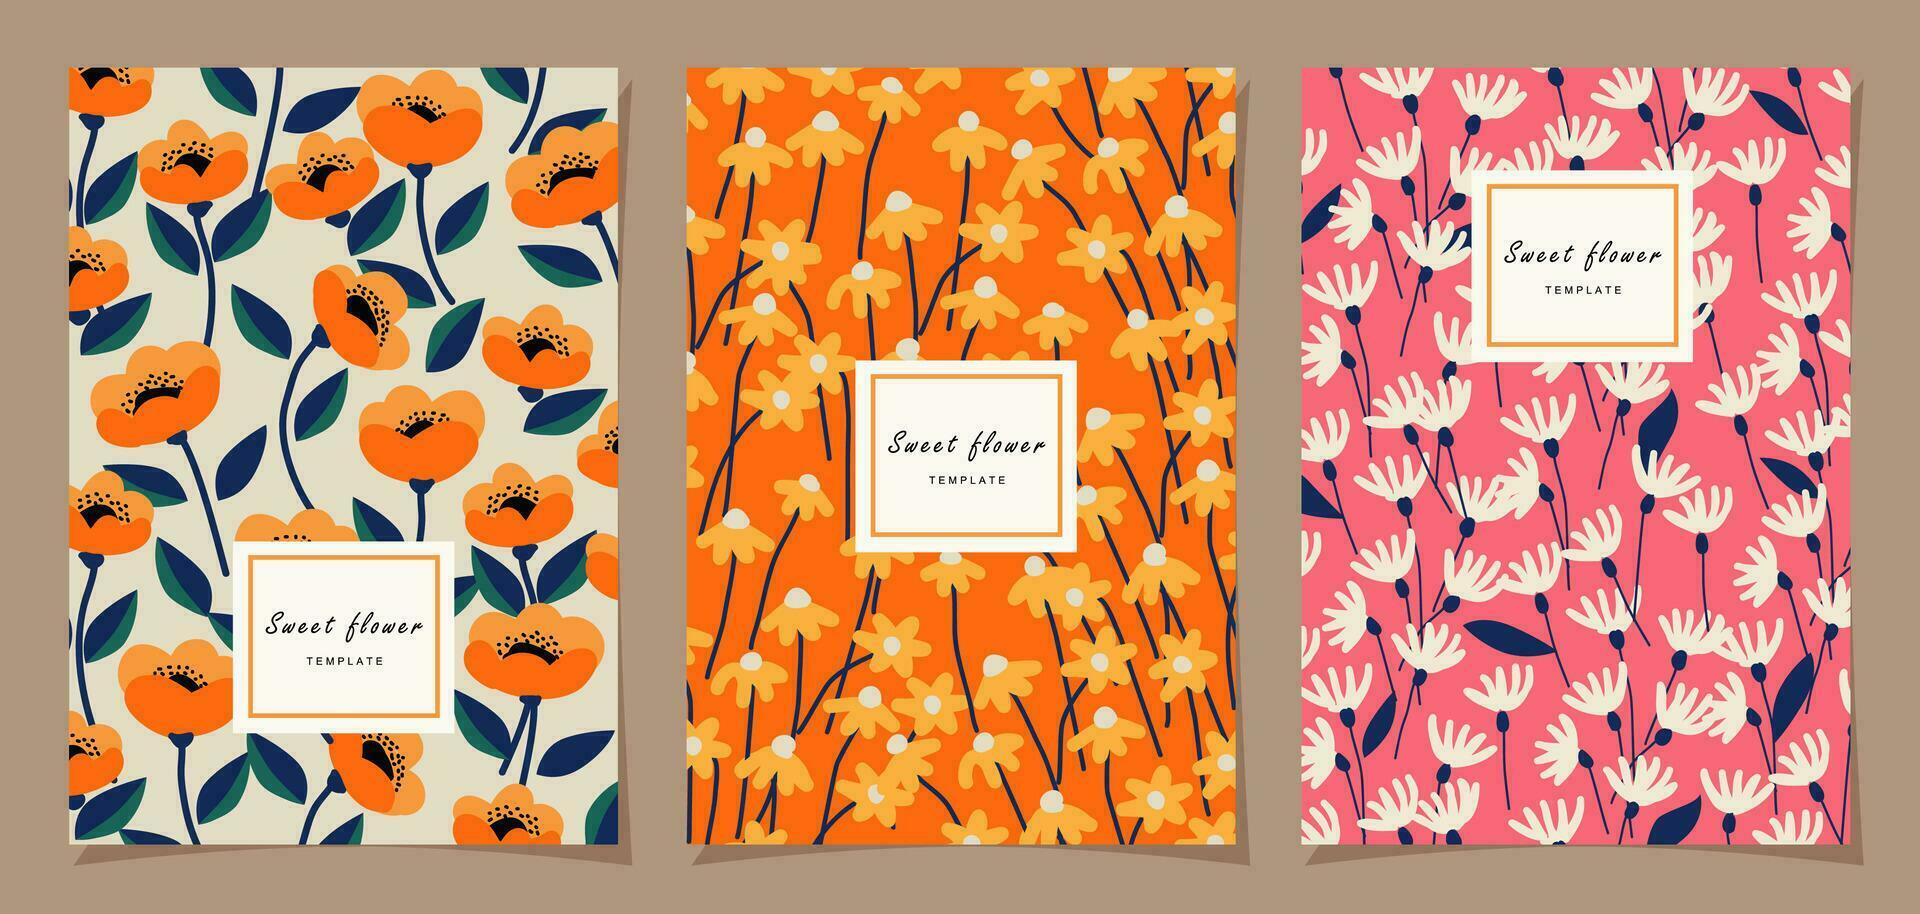 floral modelo conjunto para póster, tarjeta, cubrir, etiqueta, bandera en moderno minimalista estilo y sencillo verano diseño plantillas con flores y plantas. vector